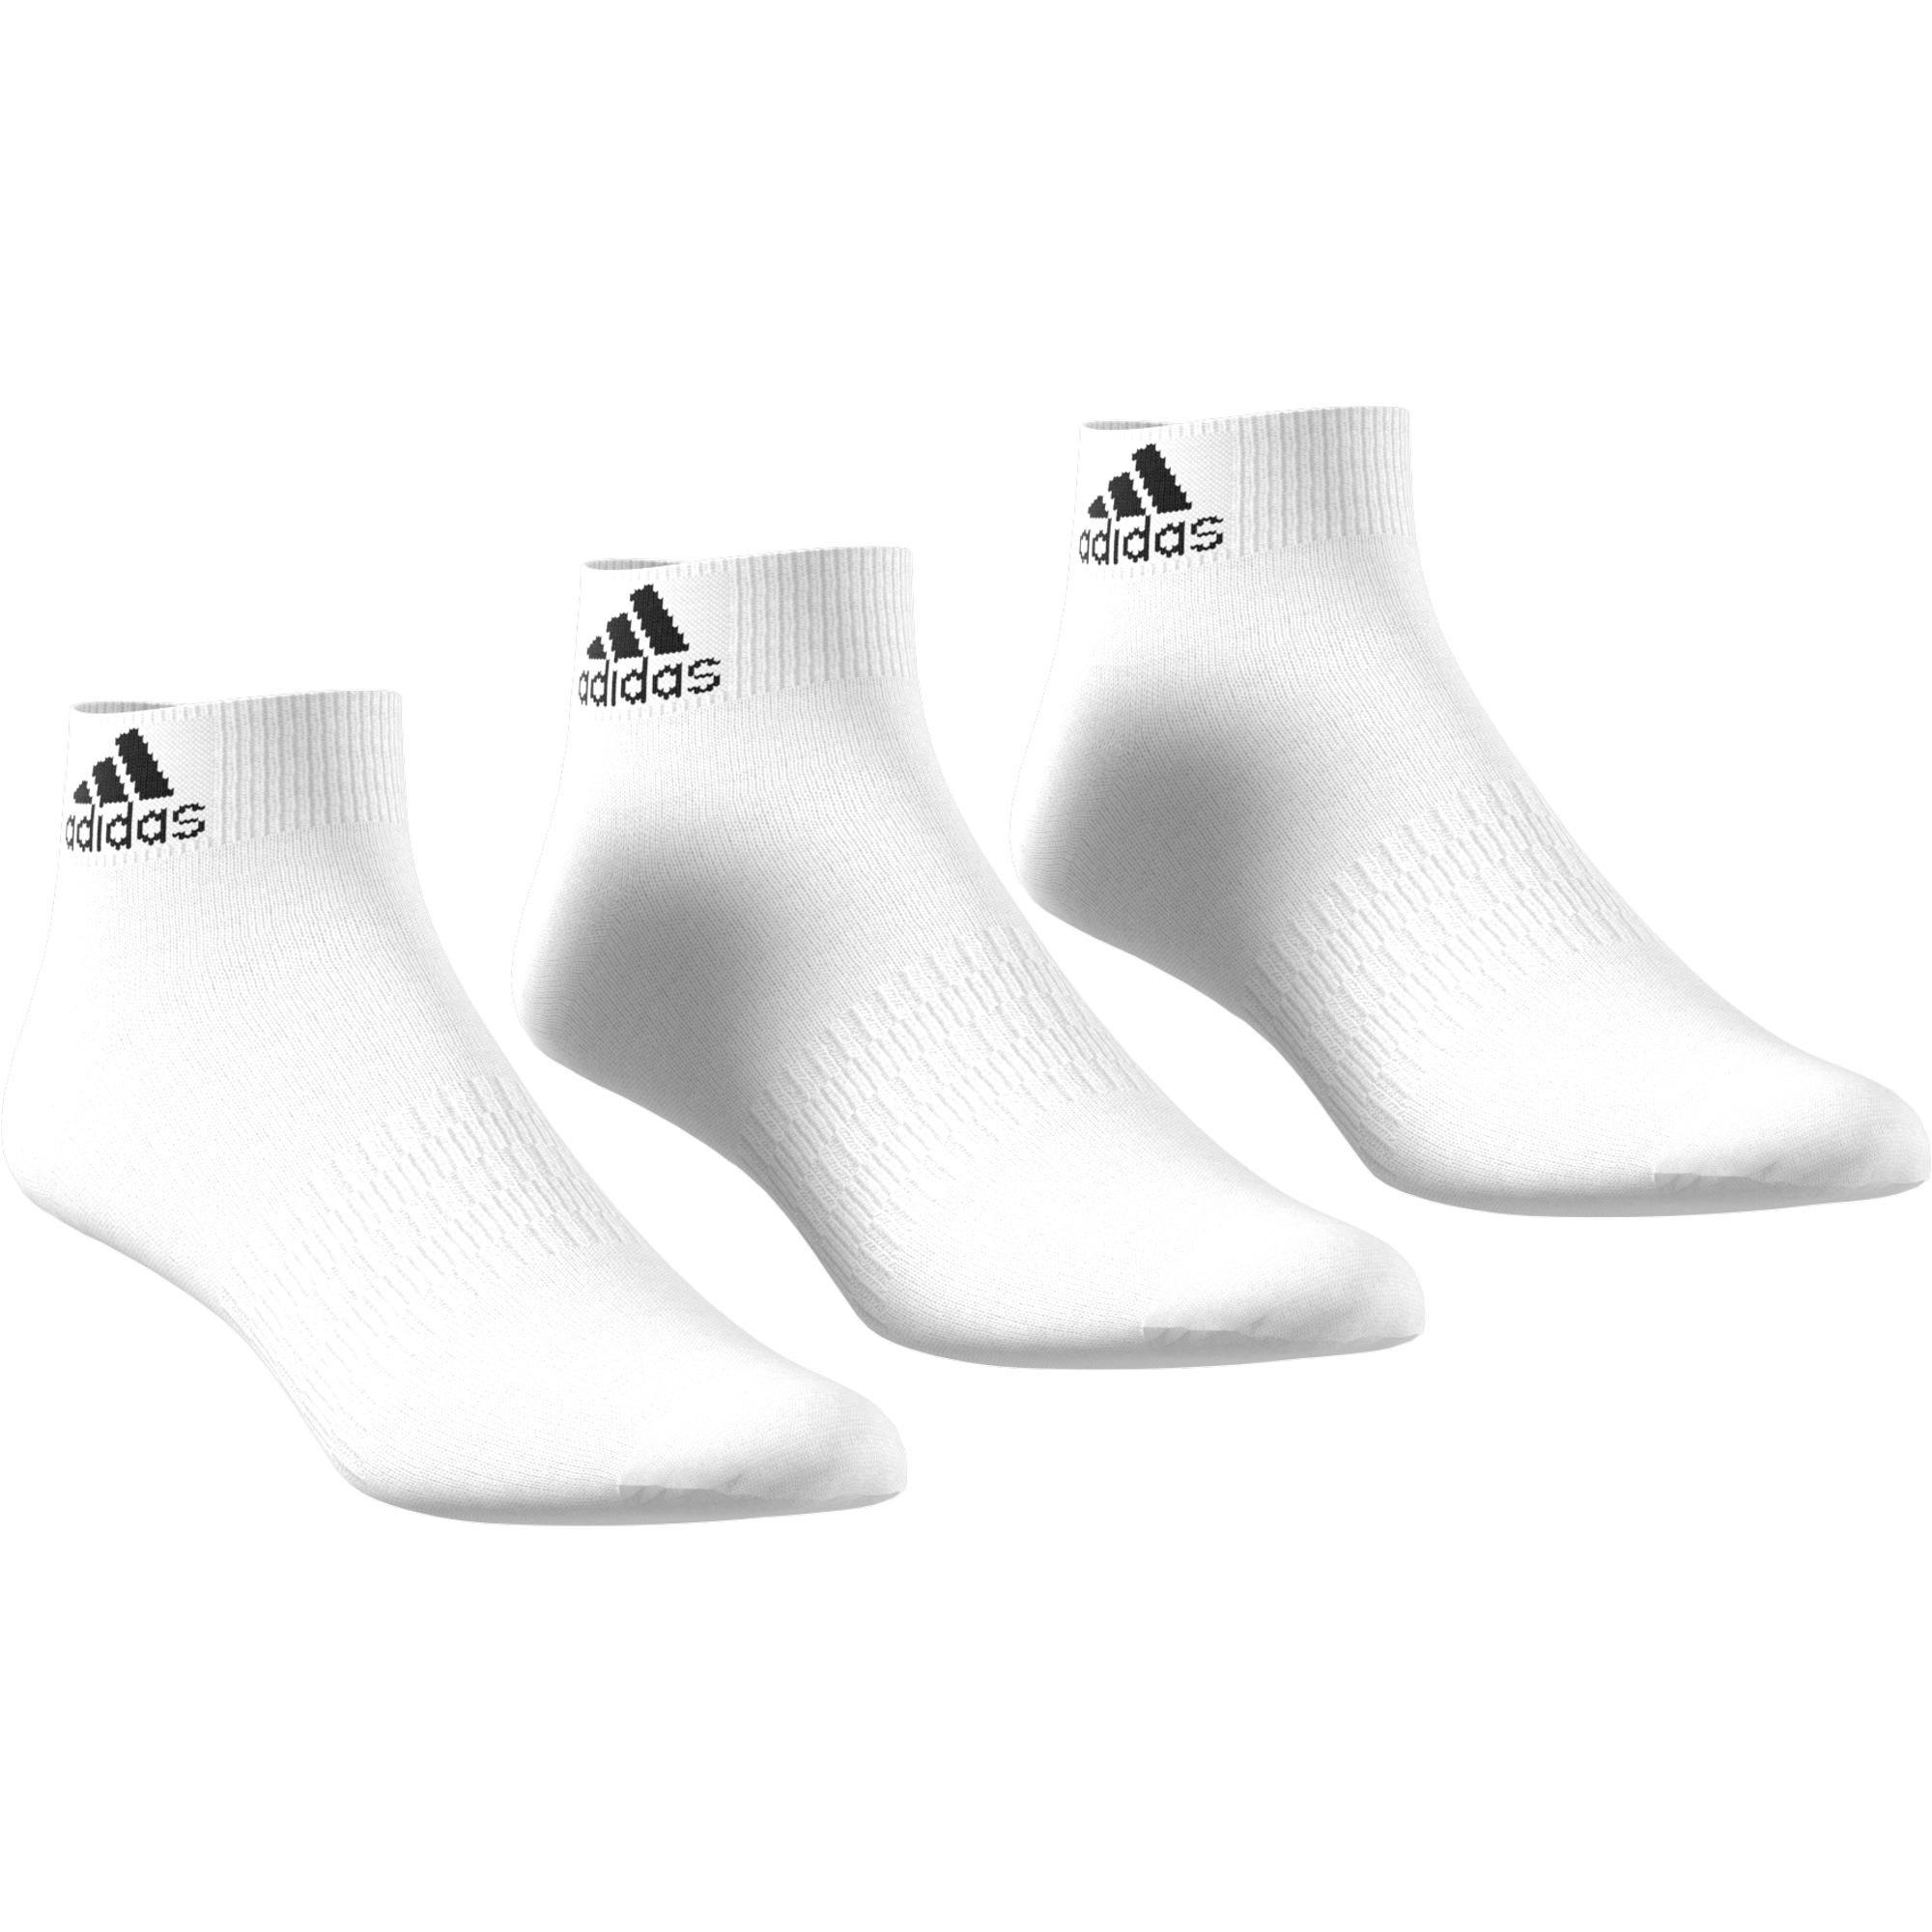 adidas - Unisex Ankle Socks 3 Pairs, white